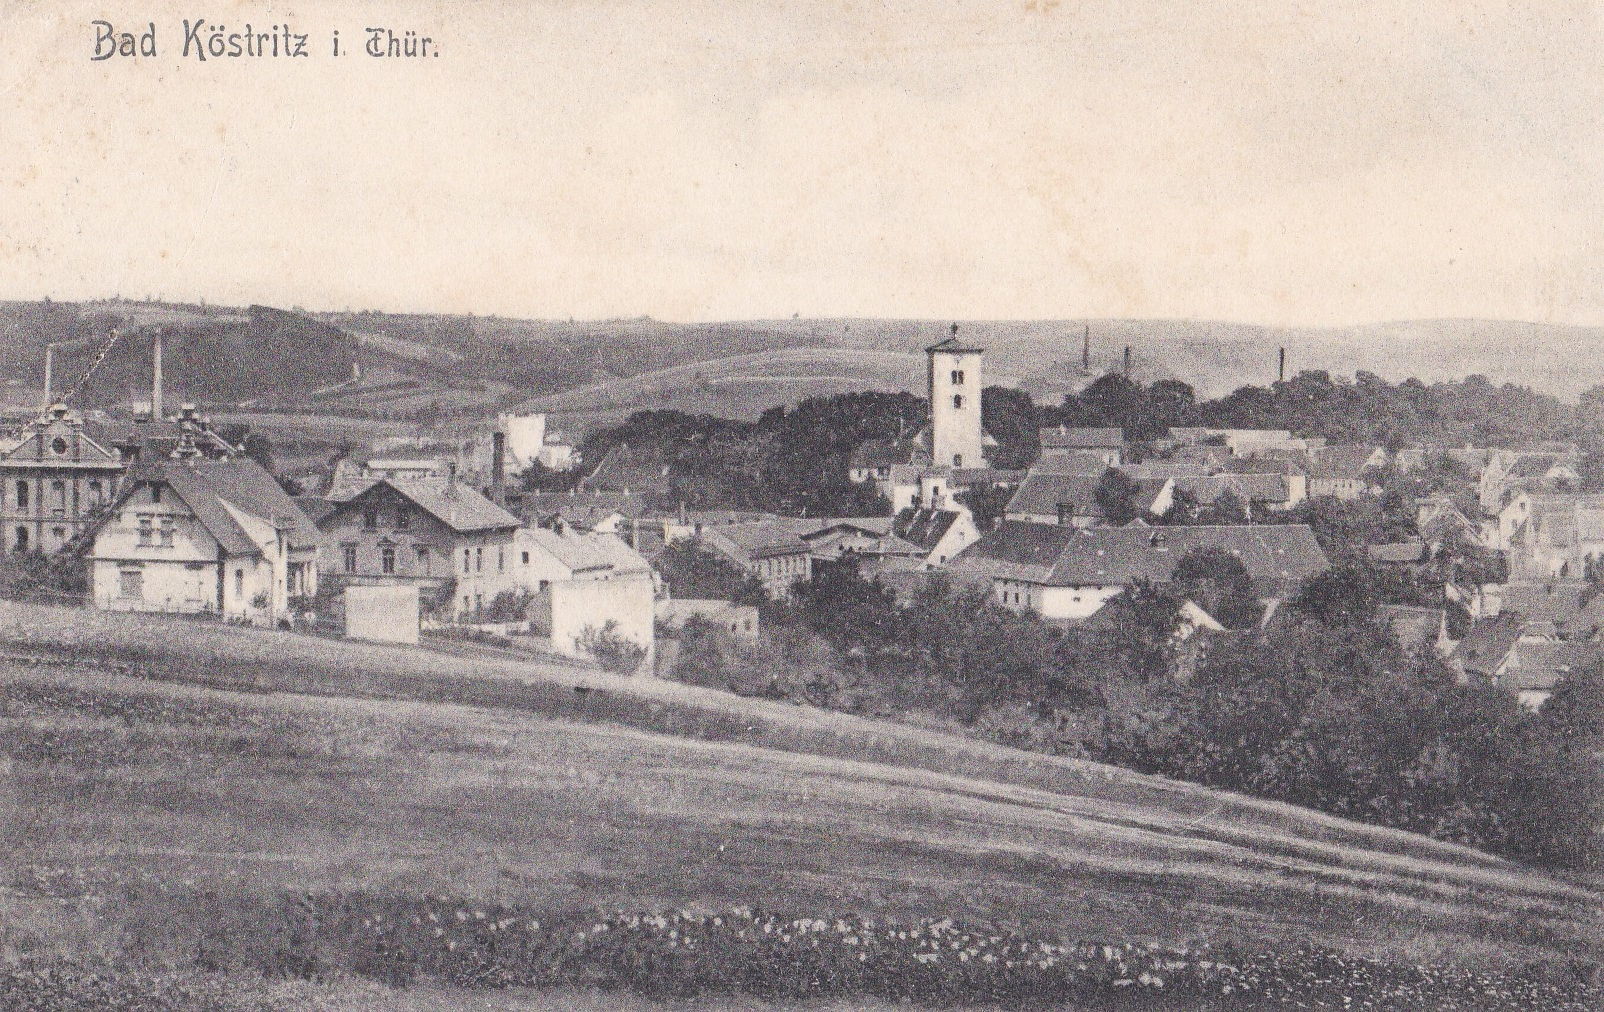 Abb 16: Bad Köstritz auf einer alten Ansichtskarte (ab 1926 Bad)